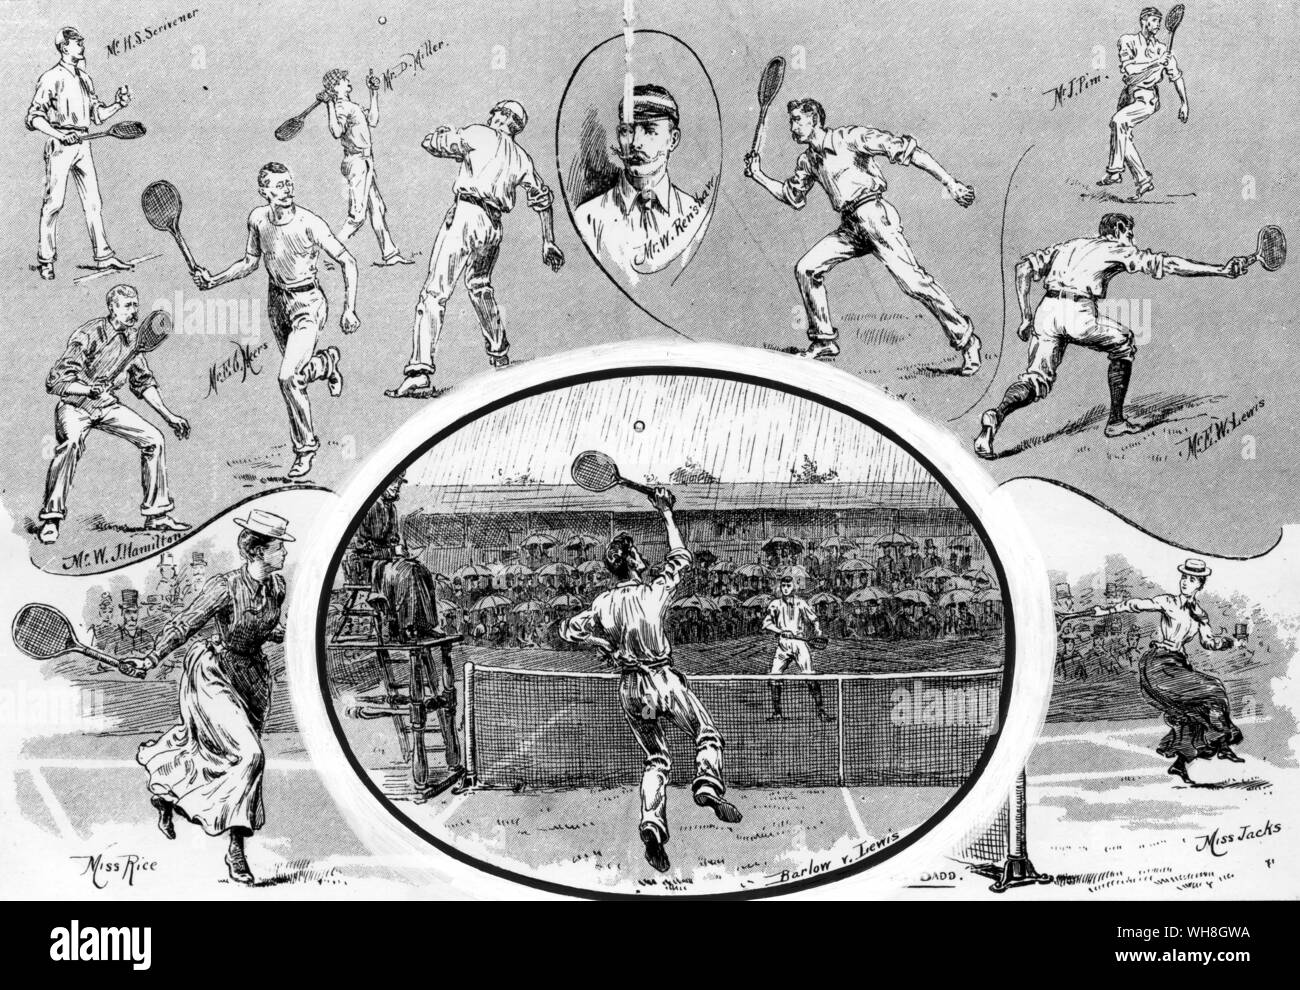 Prato i campionati di tennis a Wimbledon. Il semi-finale tra H S Barlow e E W Lewis nel luglio 1890. L'Enciclopedia del Tennis a pagina 89. Foto Stock